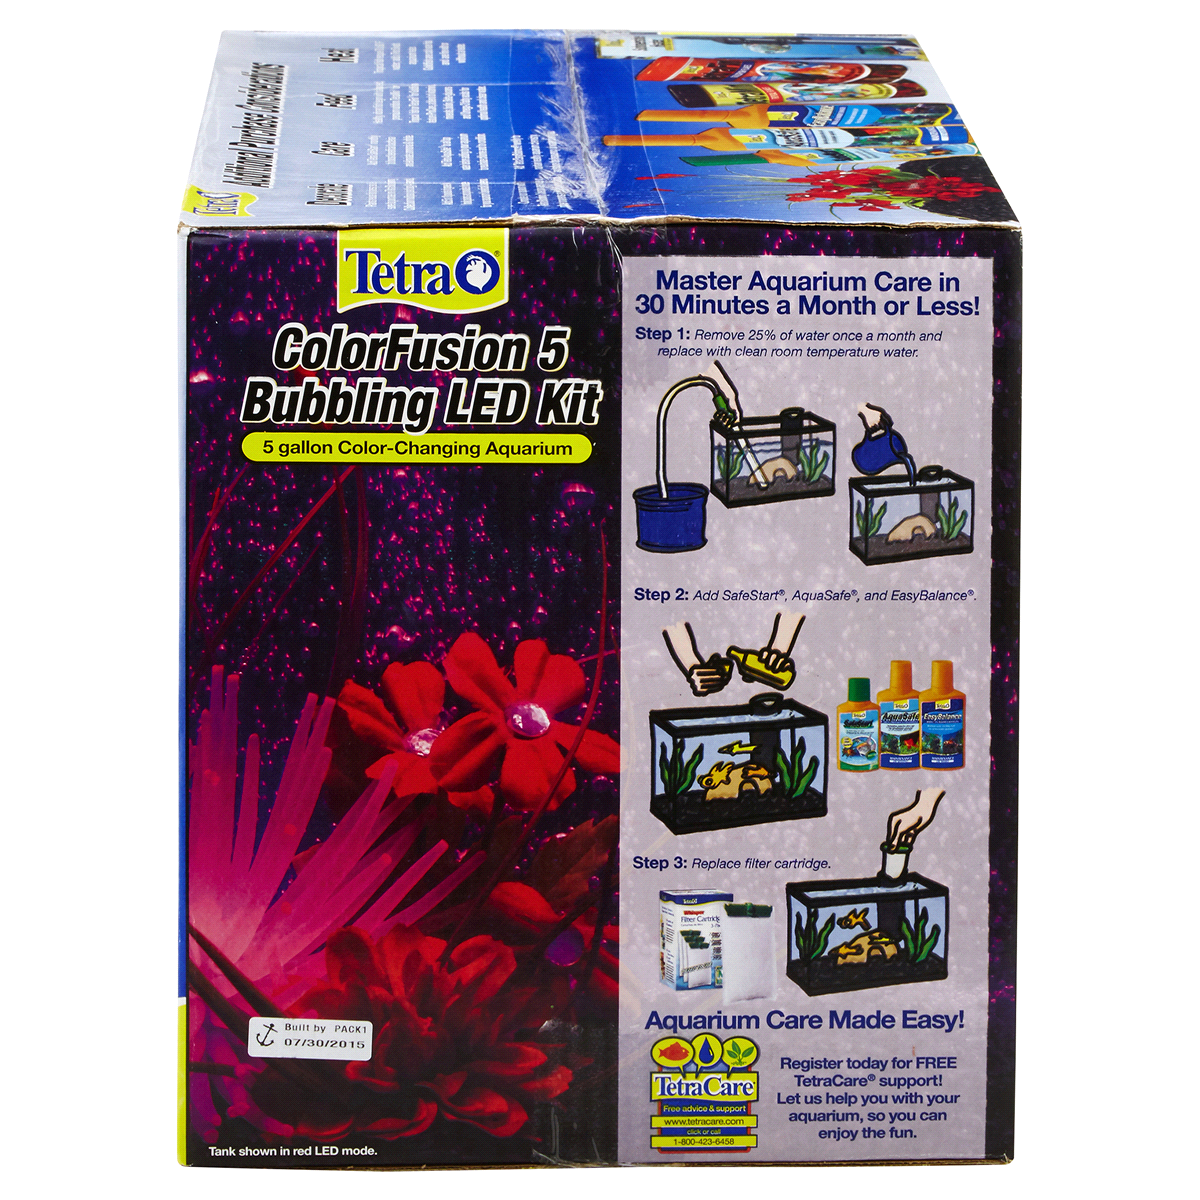 Tetra ColorFusion 5 Bubbling LED Aquarium Kit, 5 Gallon